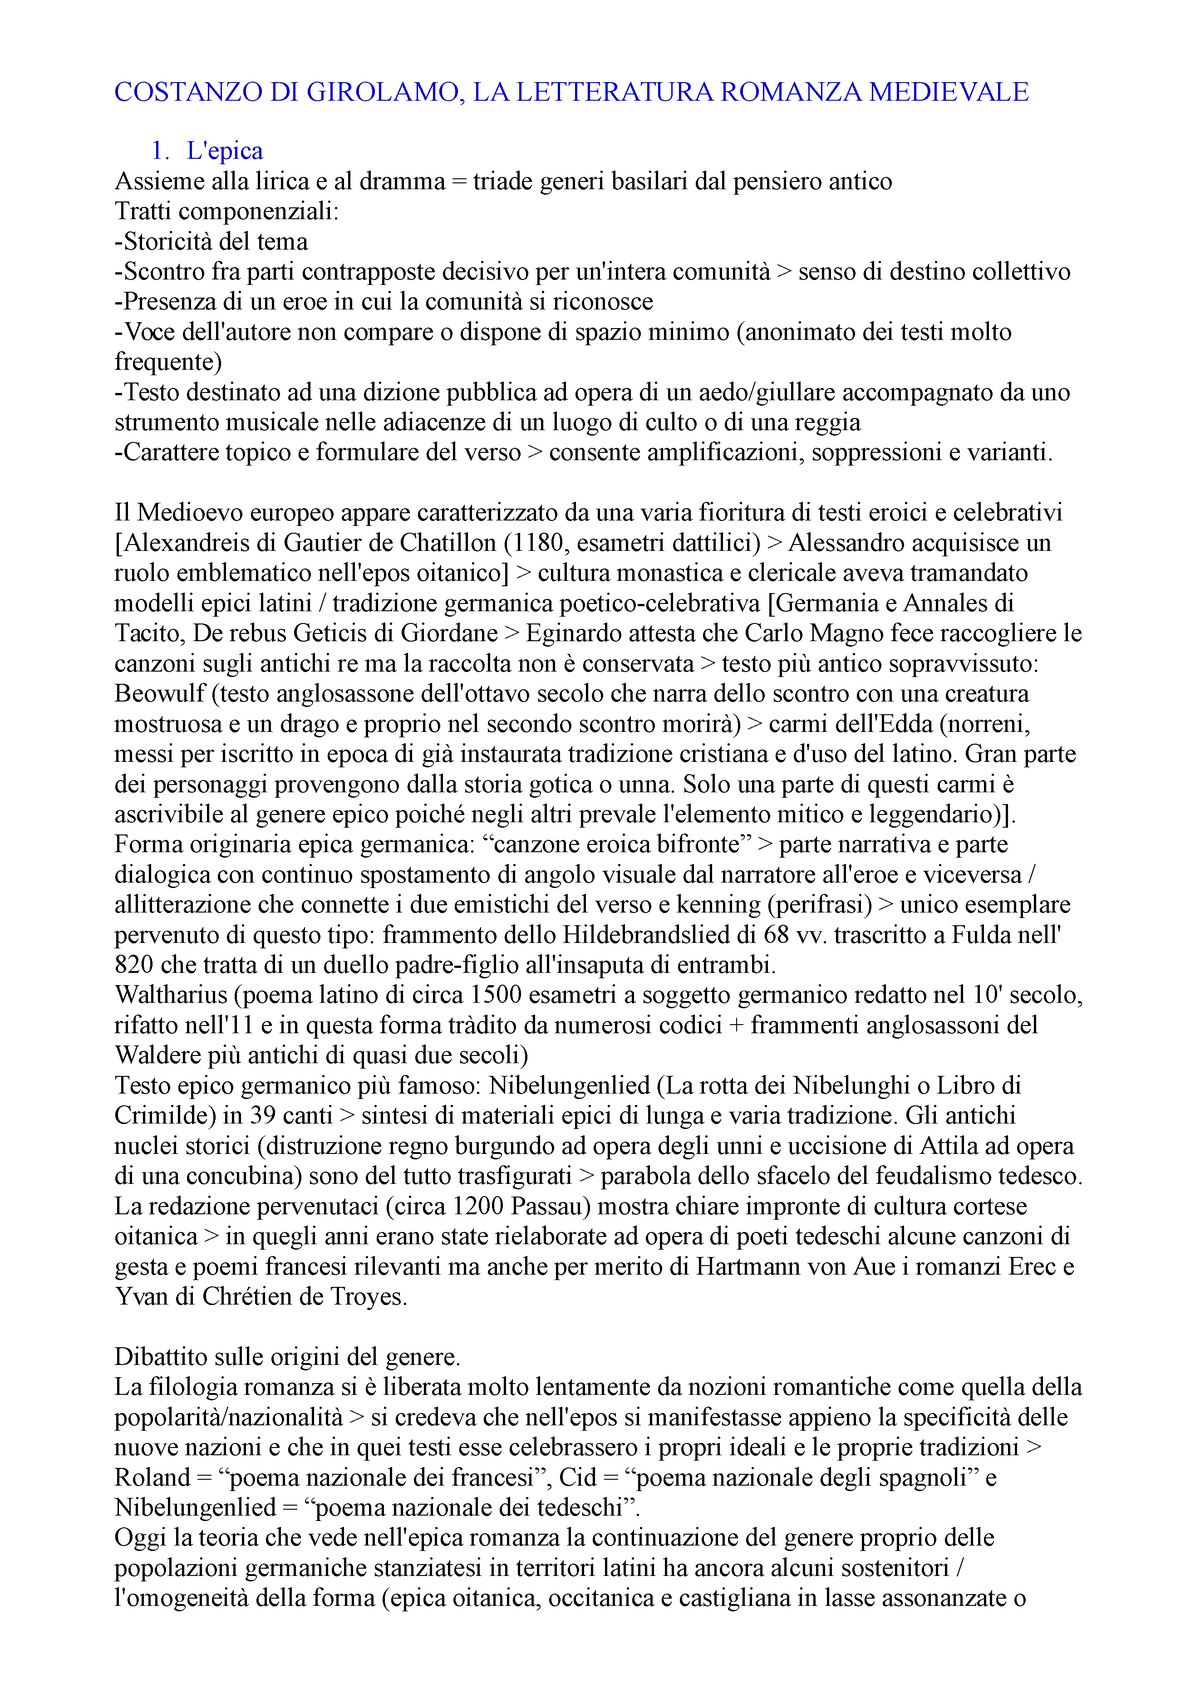 La letteratura romanza medievale,Di Girolamo - COSTANZO DI GIROLAMO, LA  LETTERATURA ROMANZA - Studocu